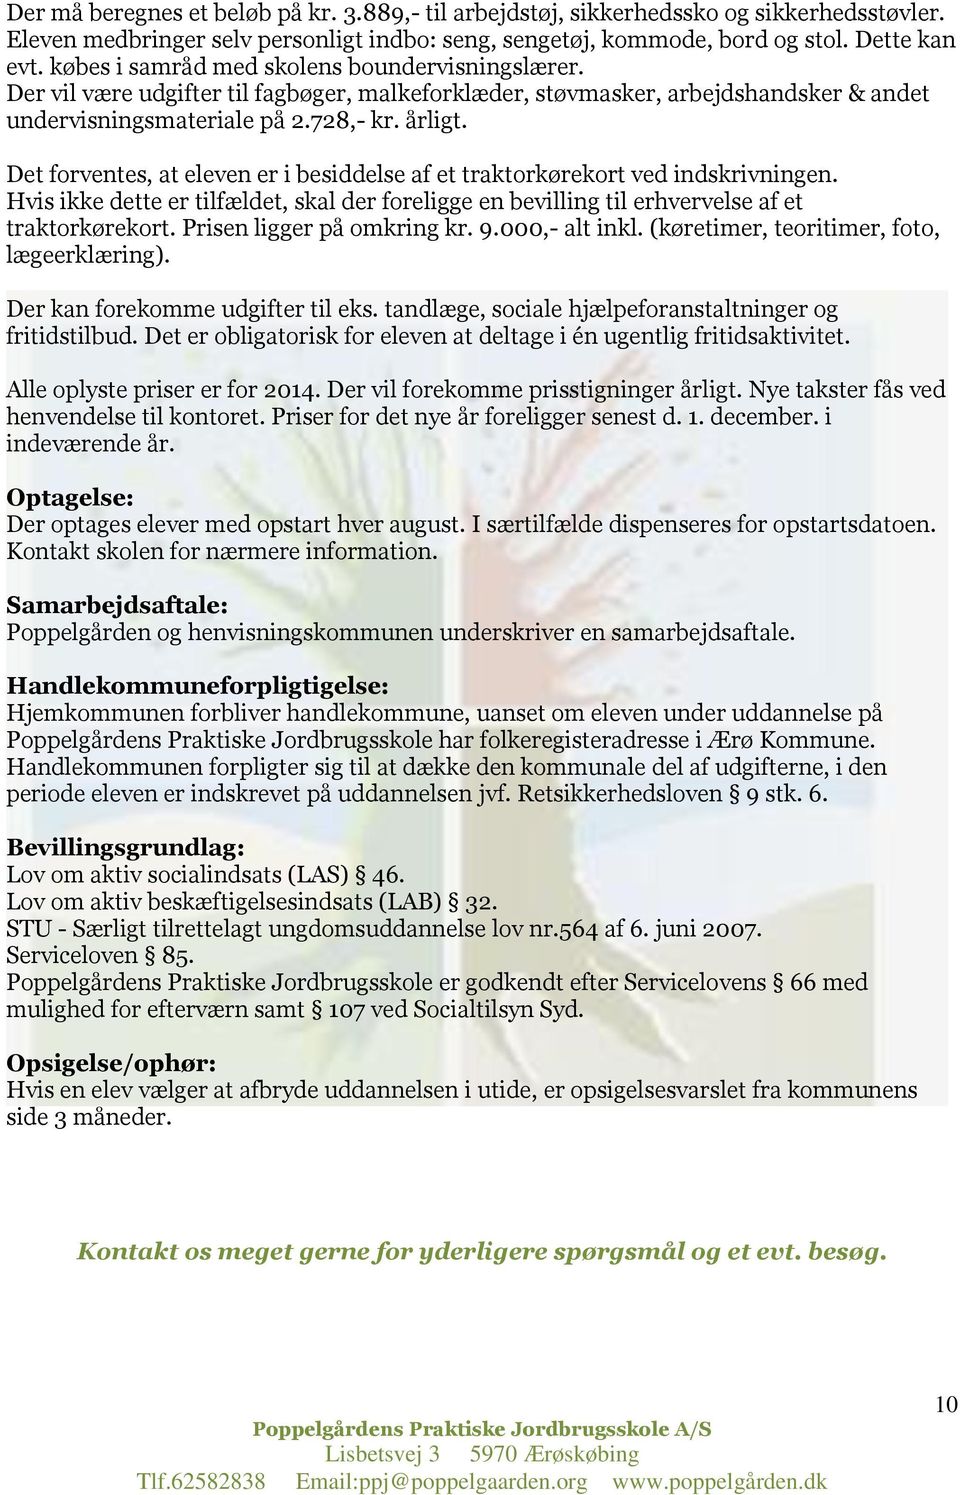 Poppelgårdens Praktiske Jordbrugsskole. - PDF Free Download